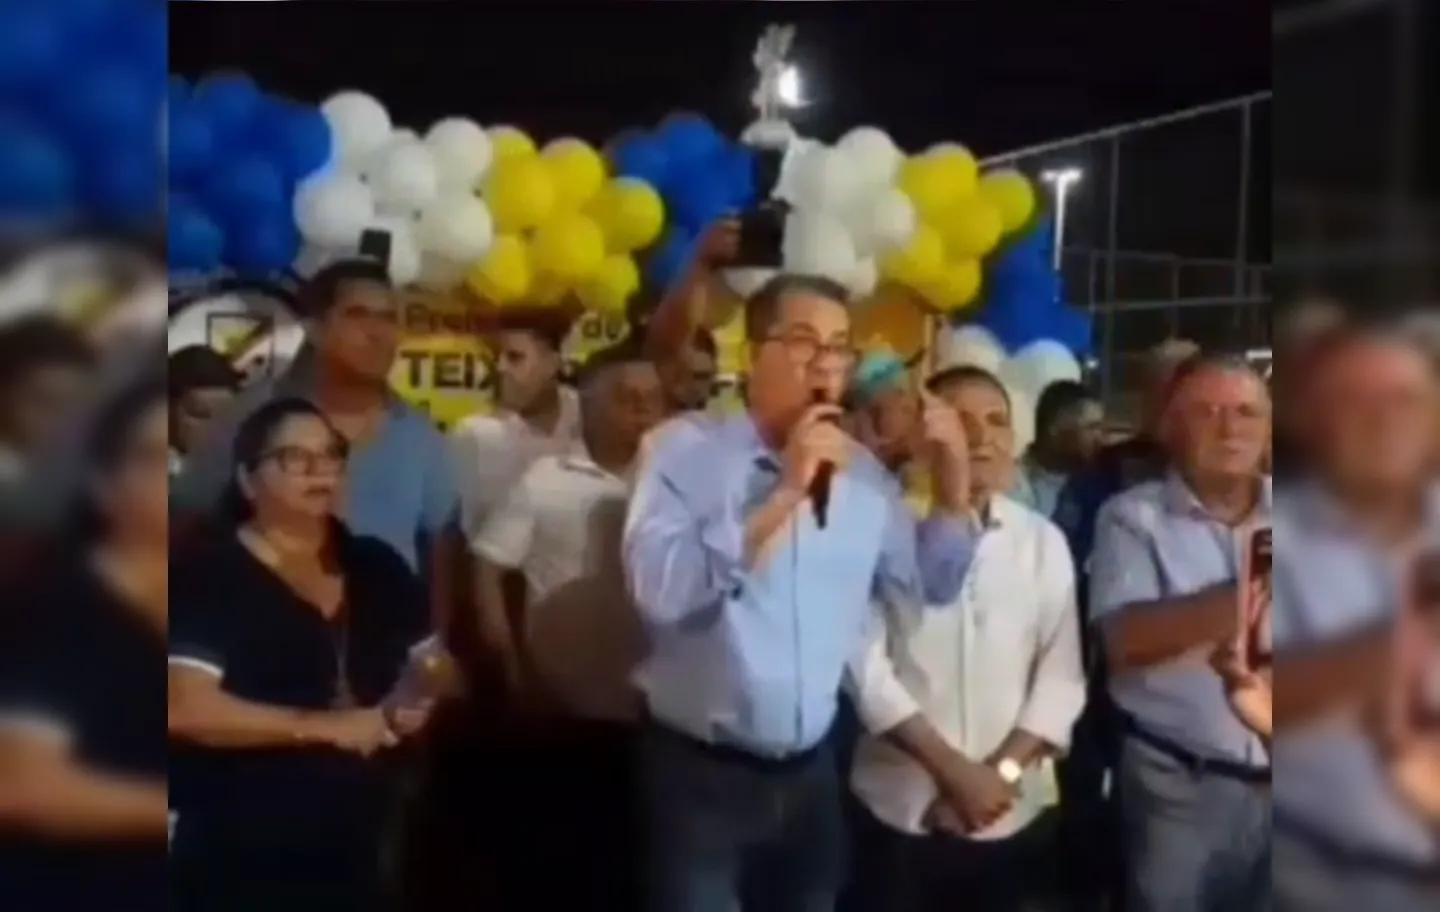 Marcelo Belitardo (UB), prefeito de Teixeira de Freitas, ataca parlamentar da oposição durante pronunciamento em evento político.